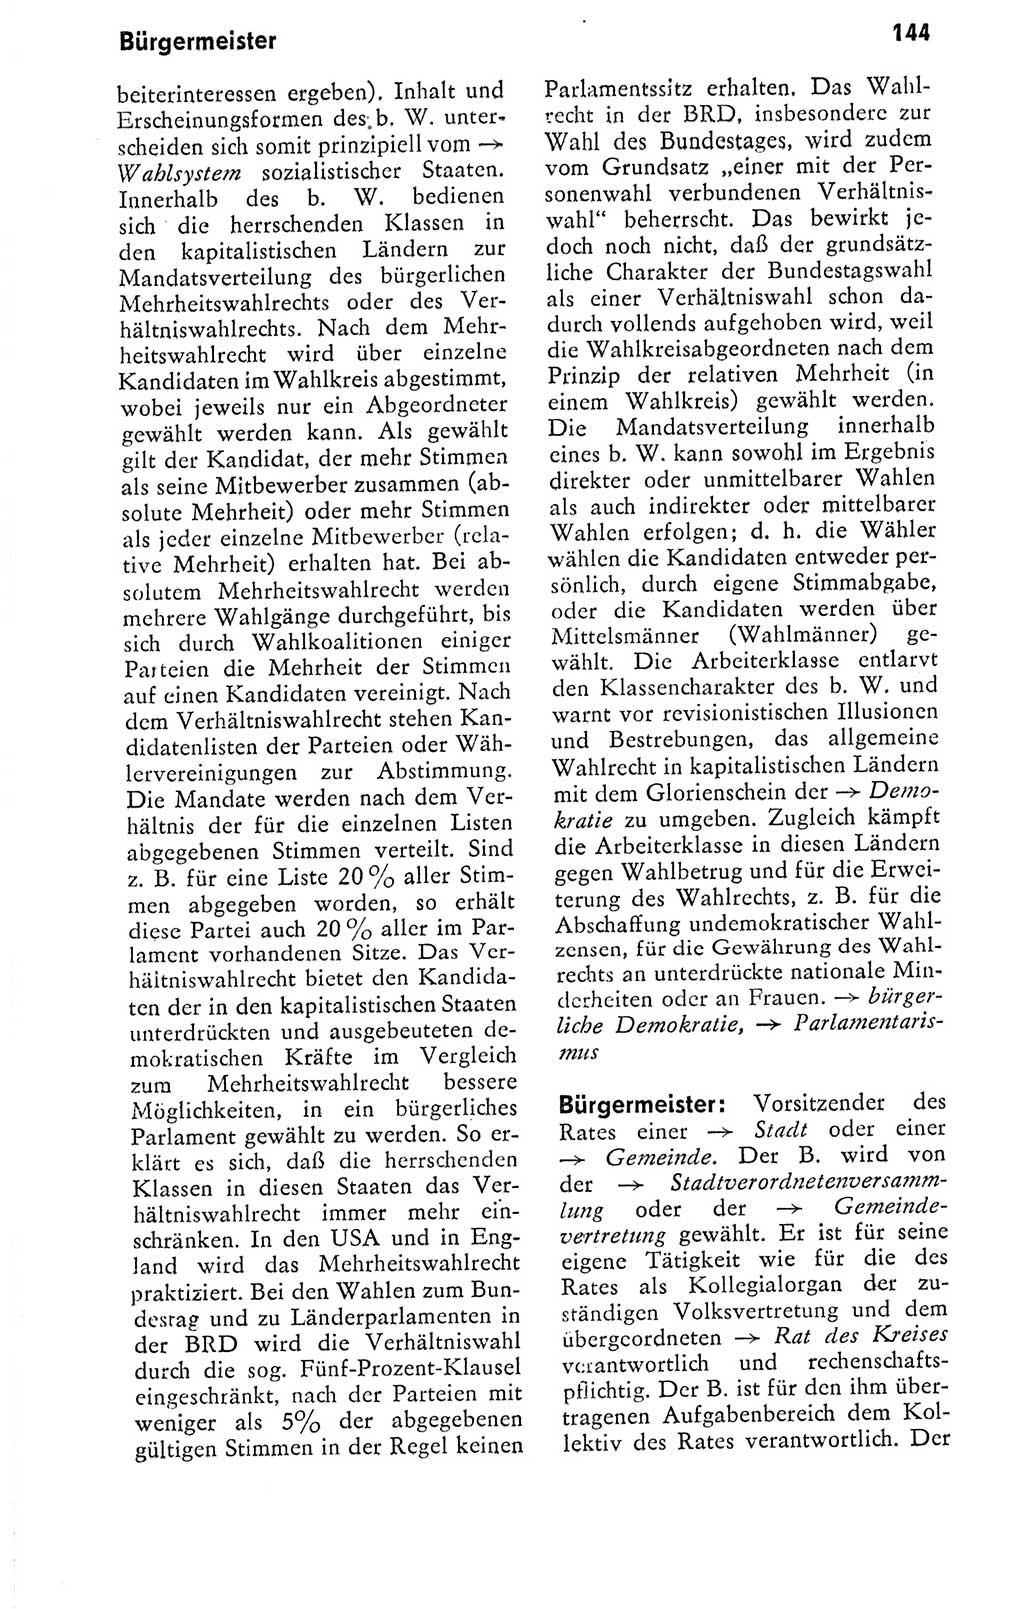 Kleines politisches Wörterbuch [Deutsche Demokratische Republik (DDR)] 1978, Seite 144 (Kl. pol. Wb. DDR 1978, S. 144)